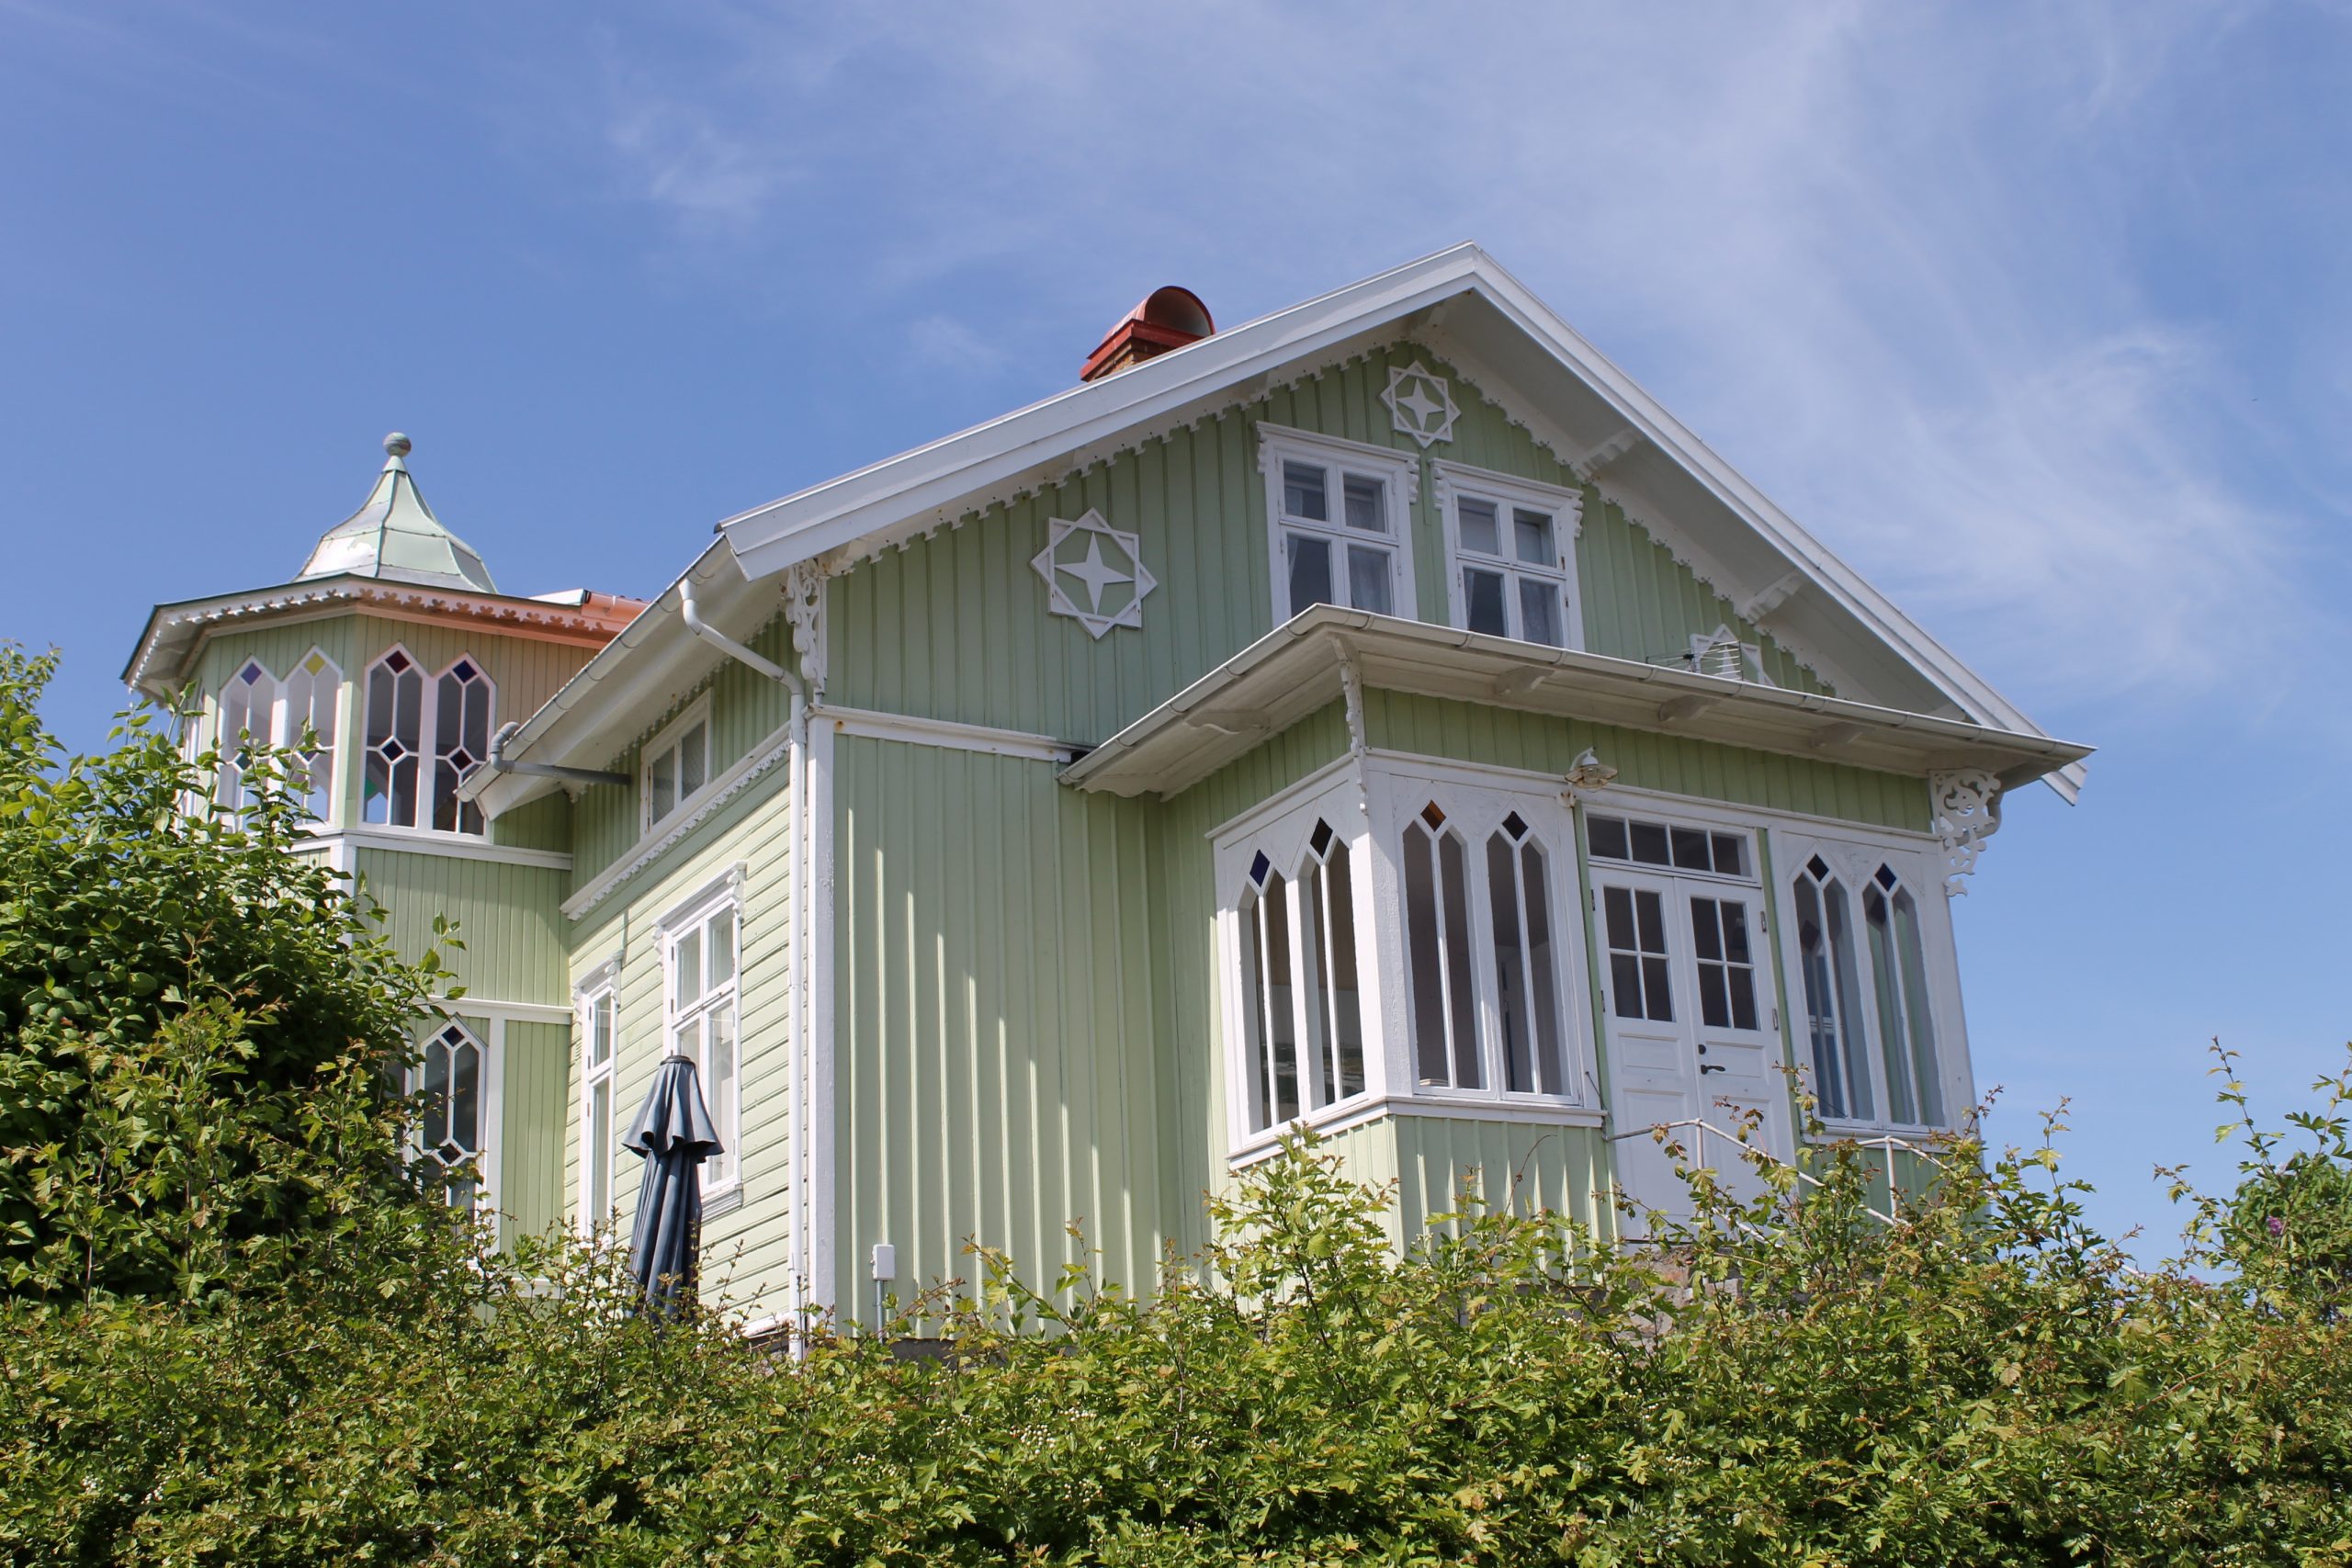 Foto. Ljust grönmålat bostadhus med vita snickerier. Utbyggd veranda och trapphustorn med spröjsade fönster.